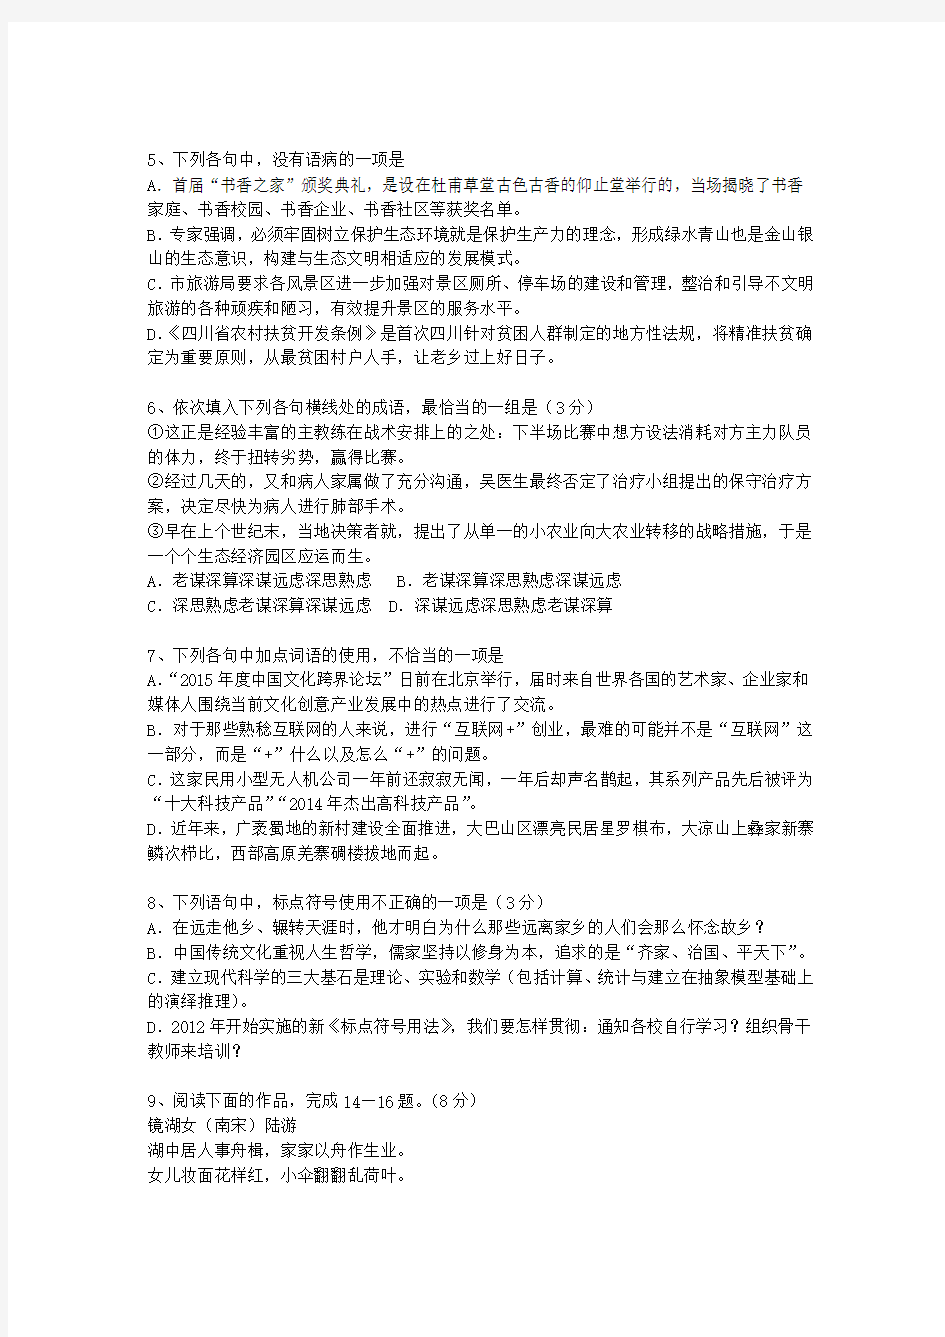 2011青海省高考语文试题及详细答案考试题库